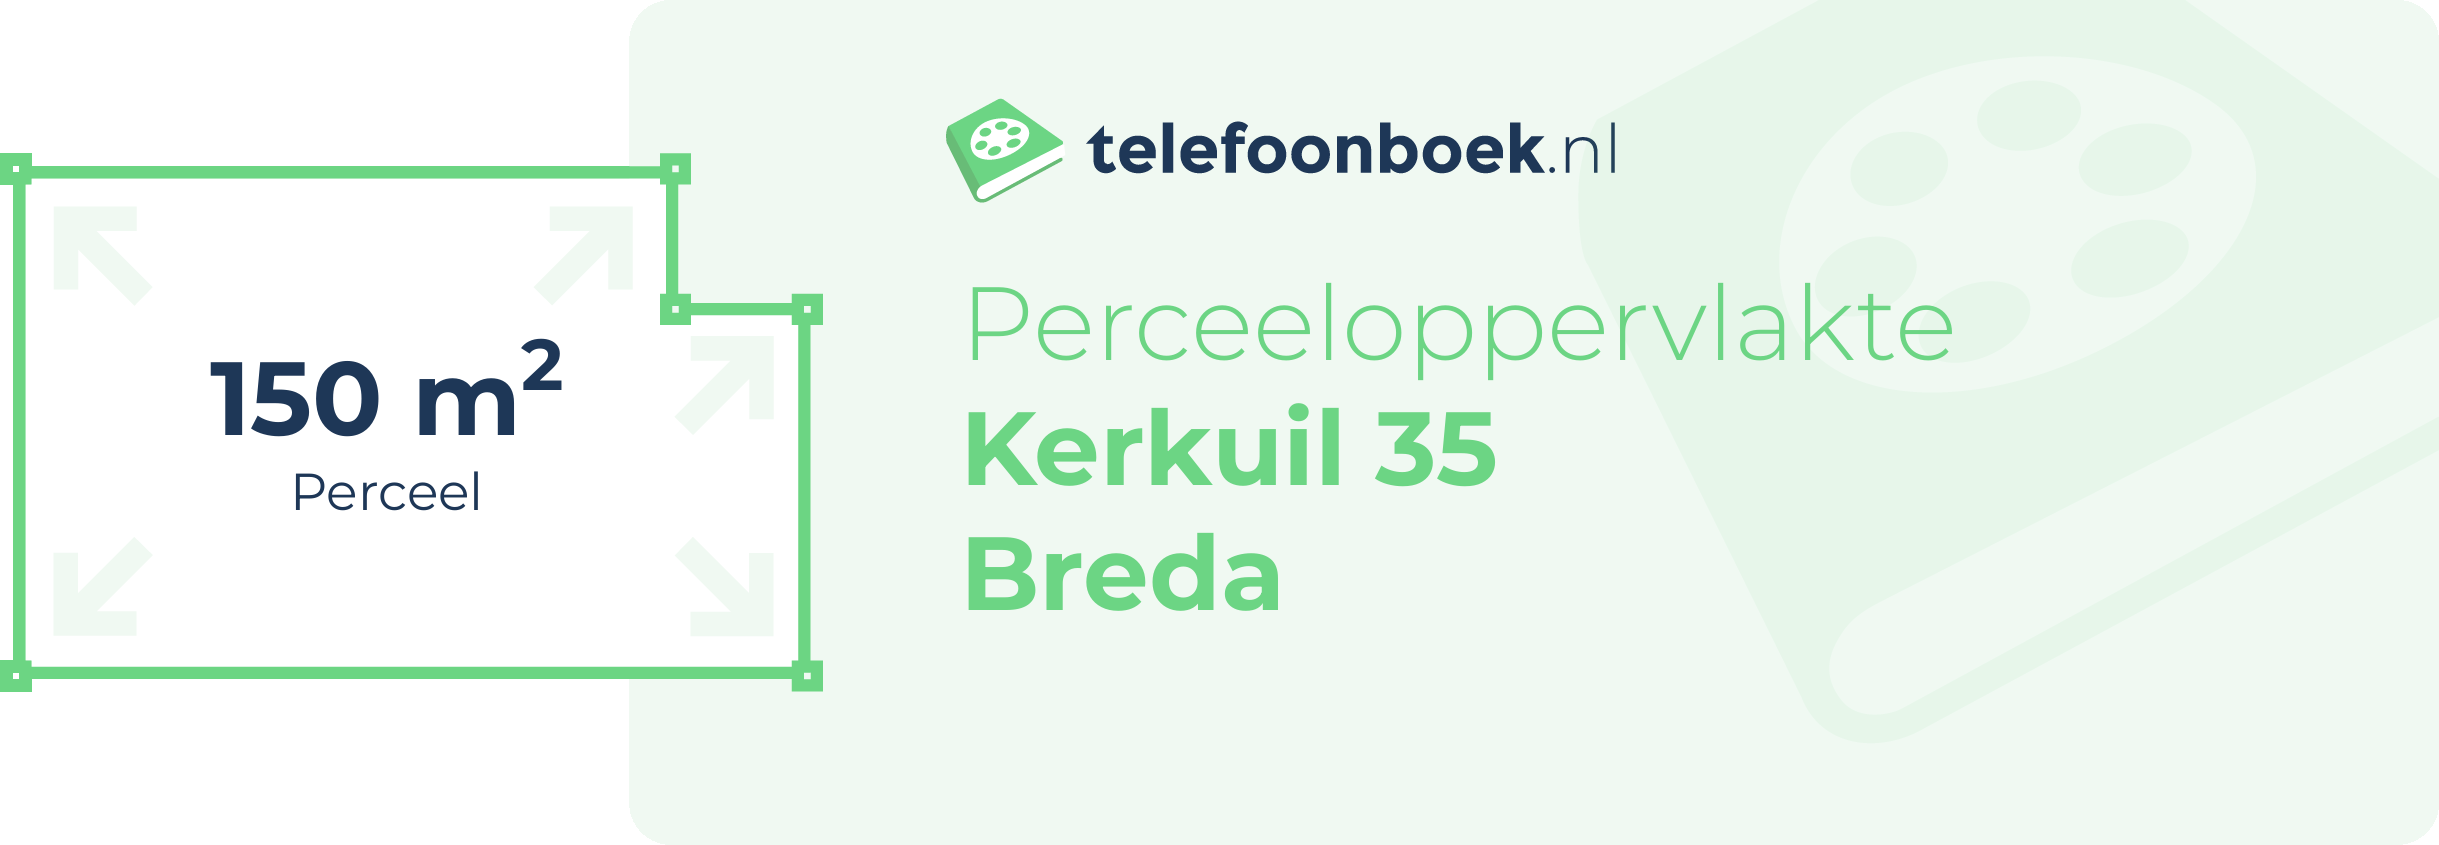 Perceeloppervlakte Kerkuil 35 Breda